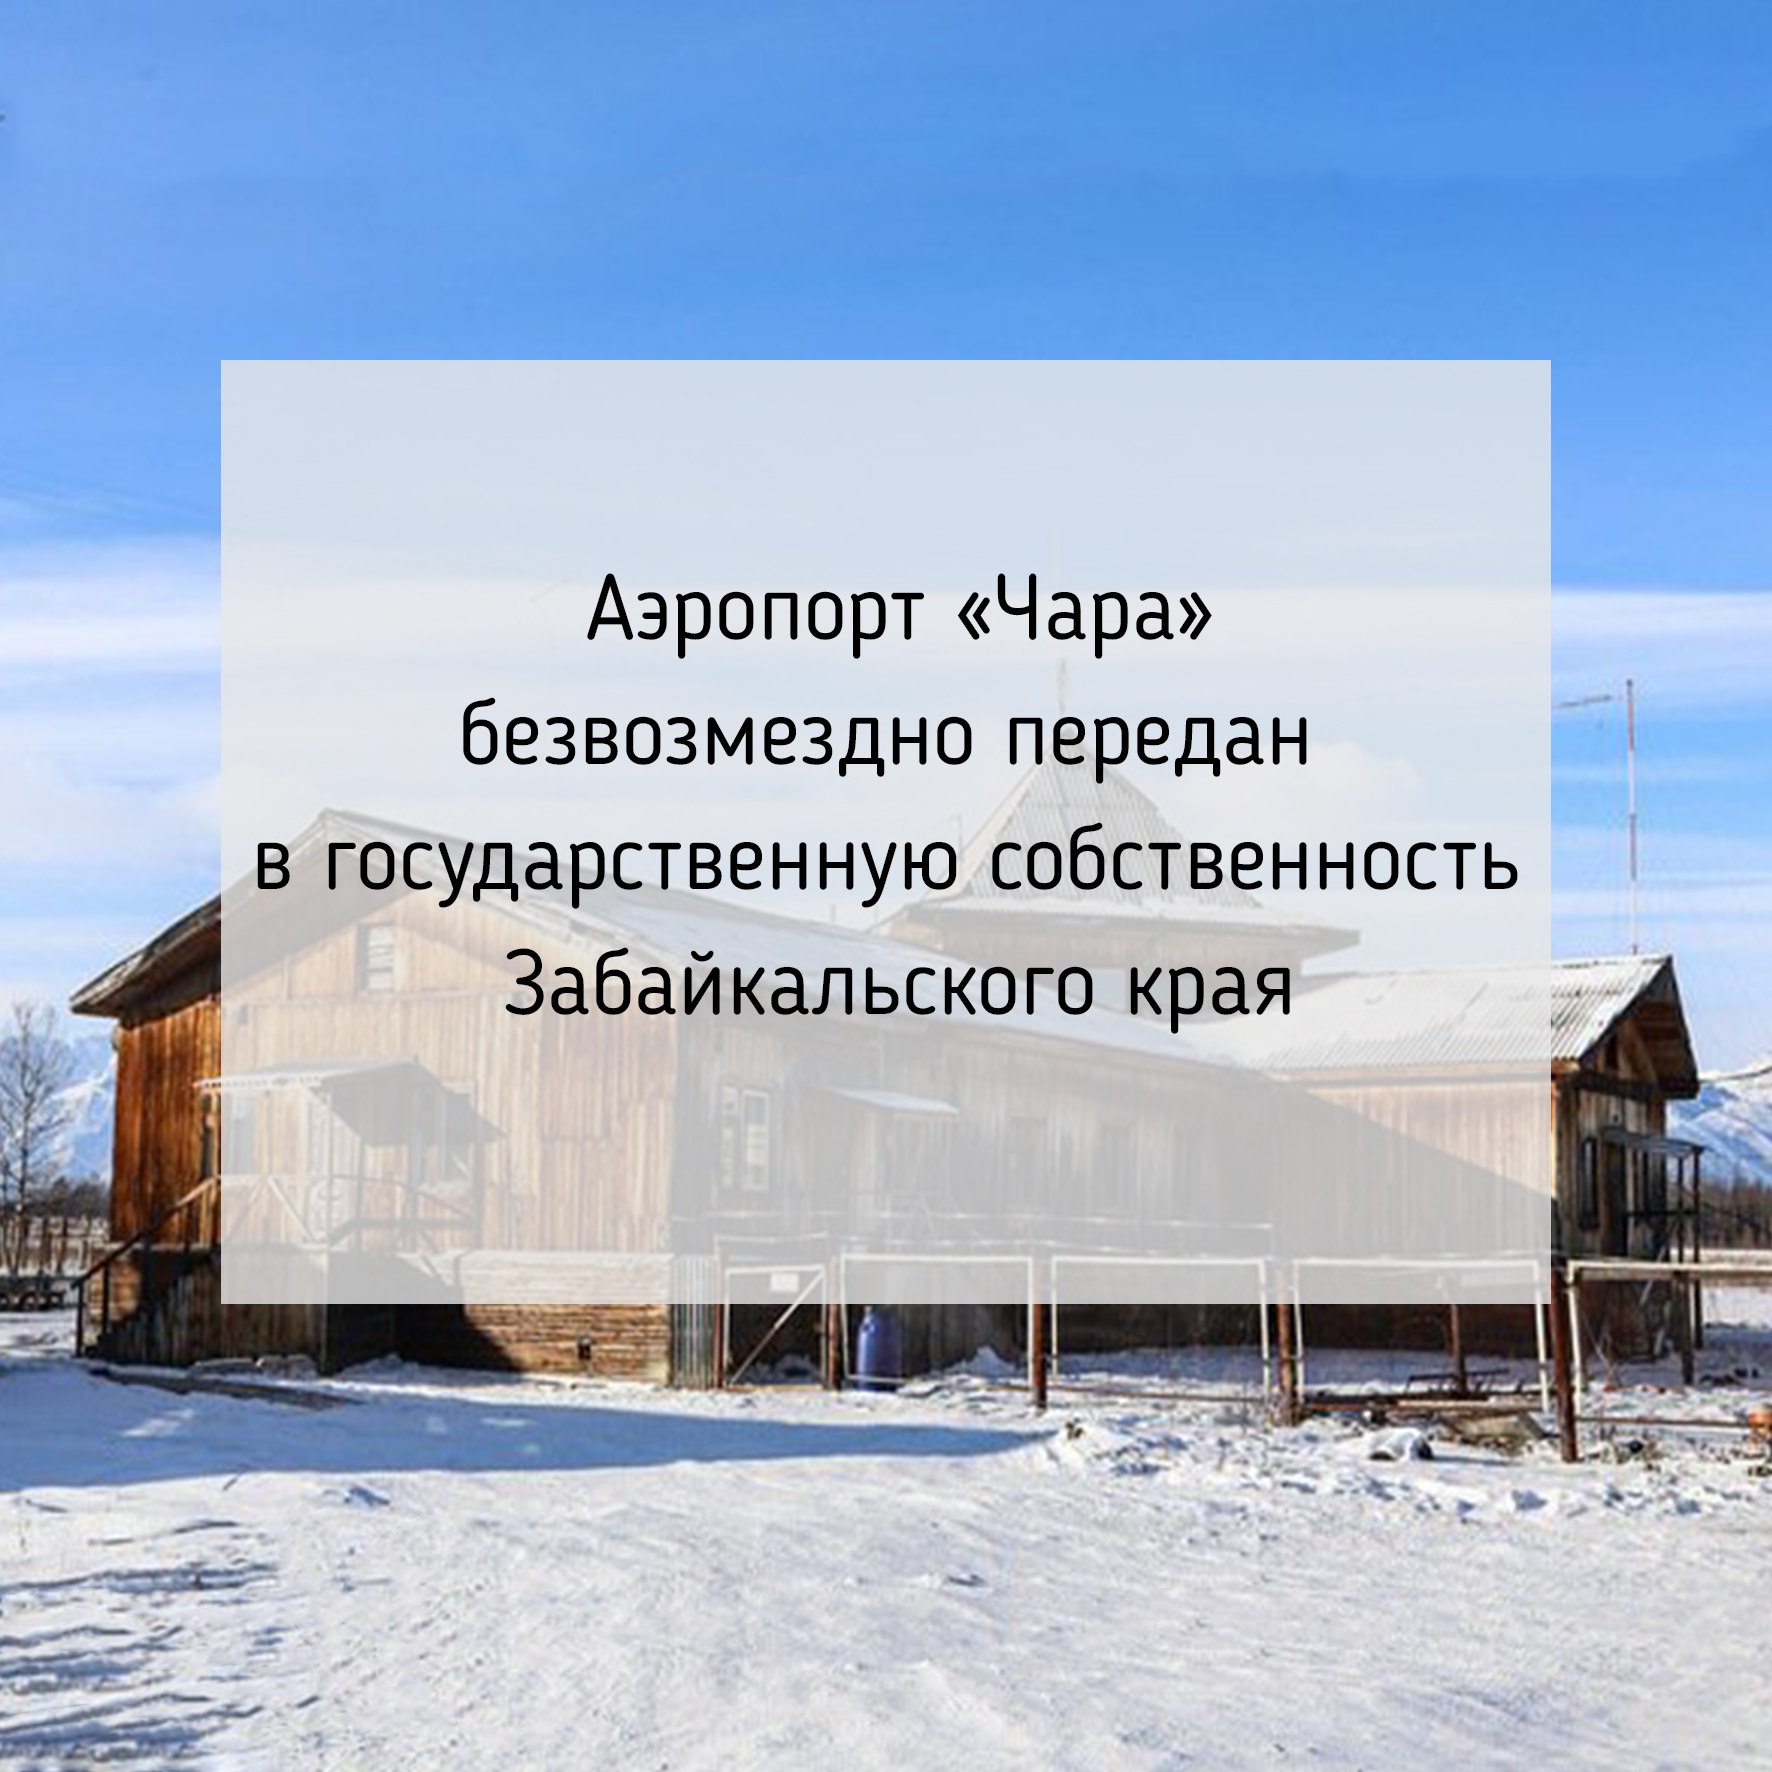 Аэропорт «Чара» безвозмездно передан в государственную собственность Забайкальского края